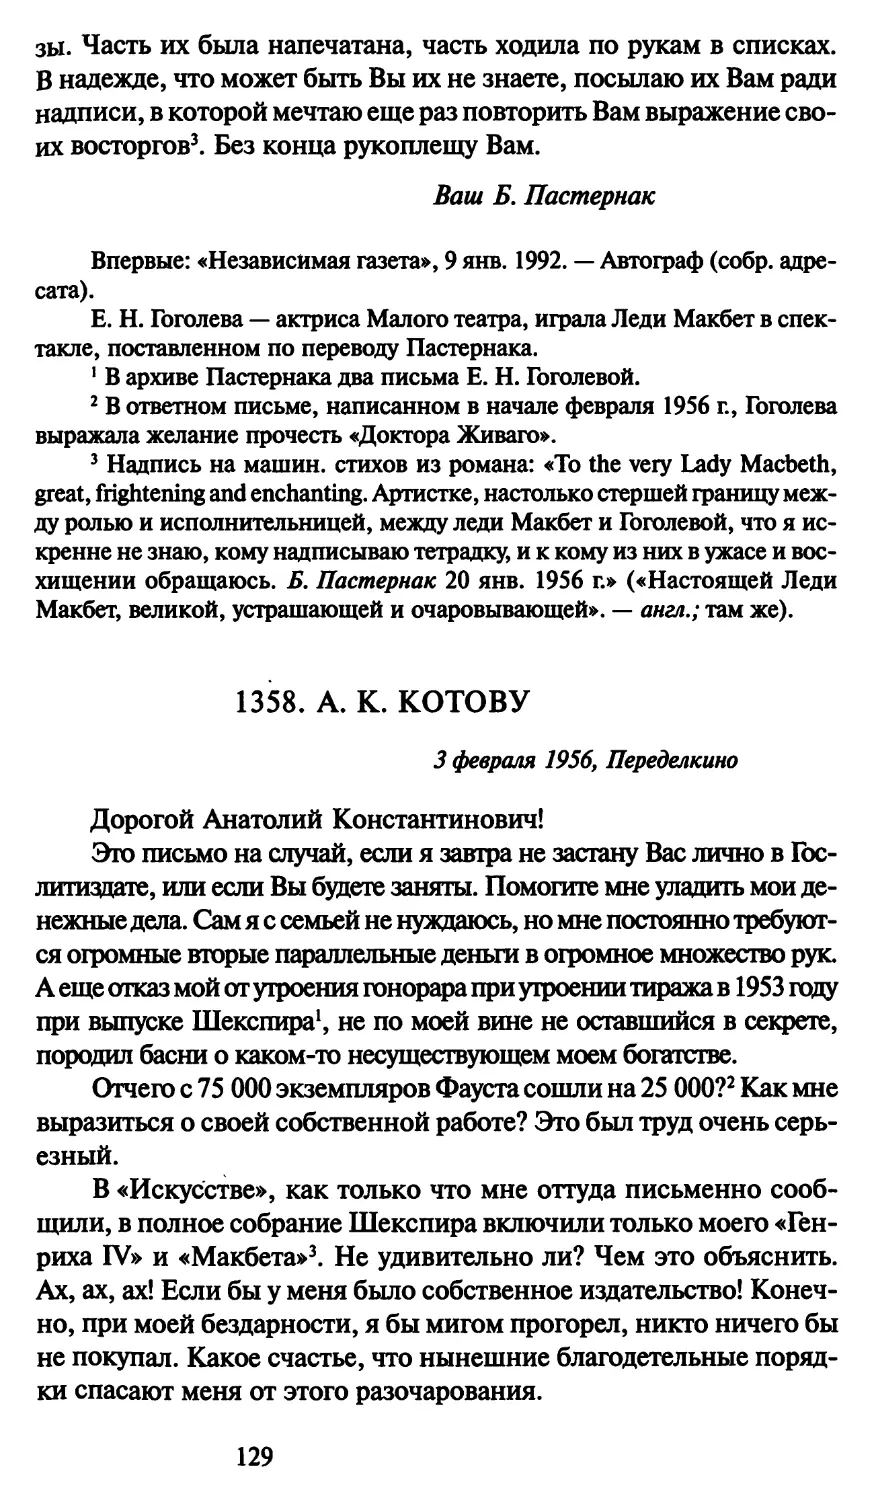 1358. А. К. Котову 3 февраля 1956